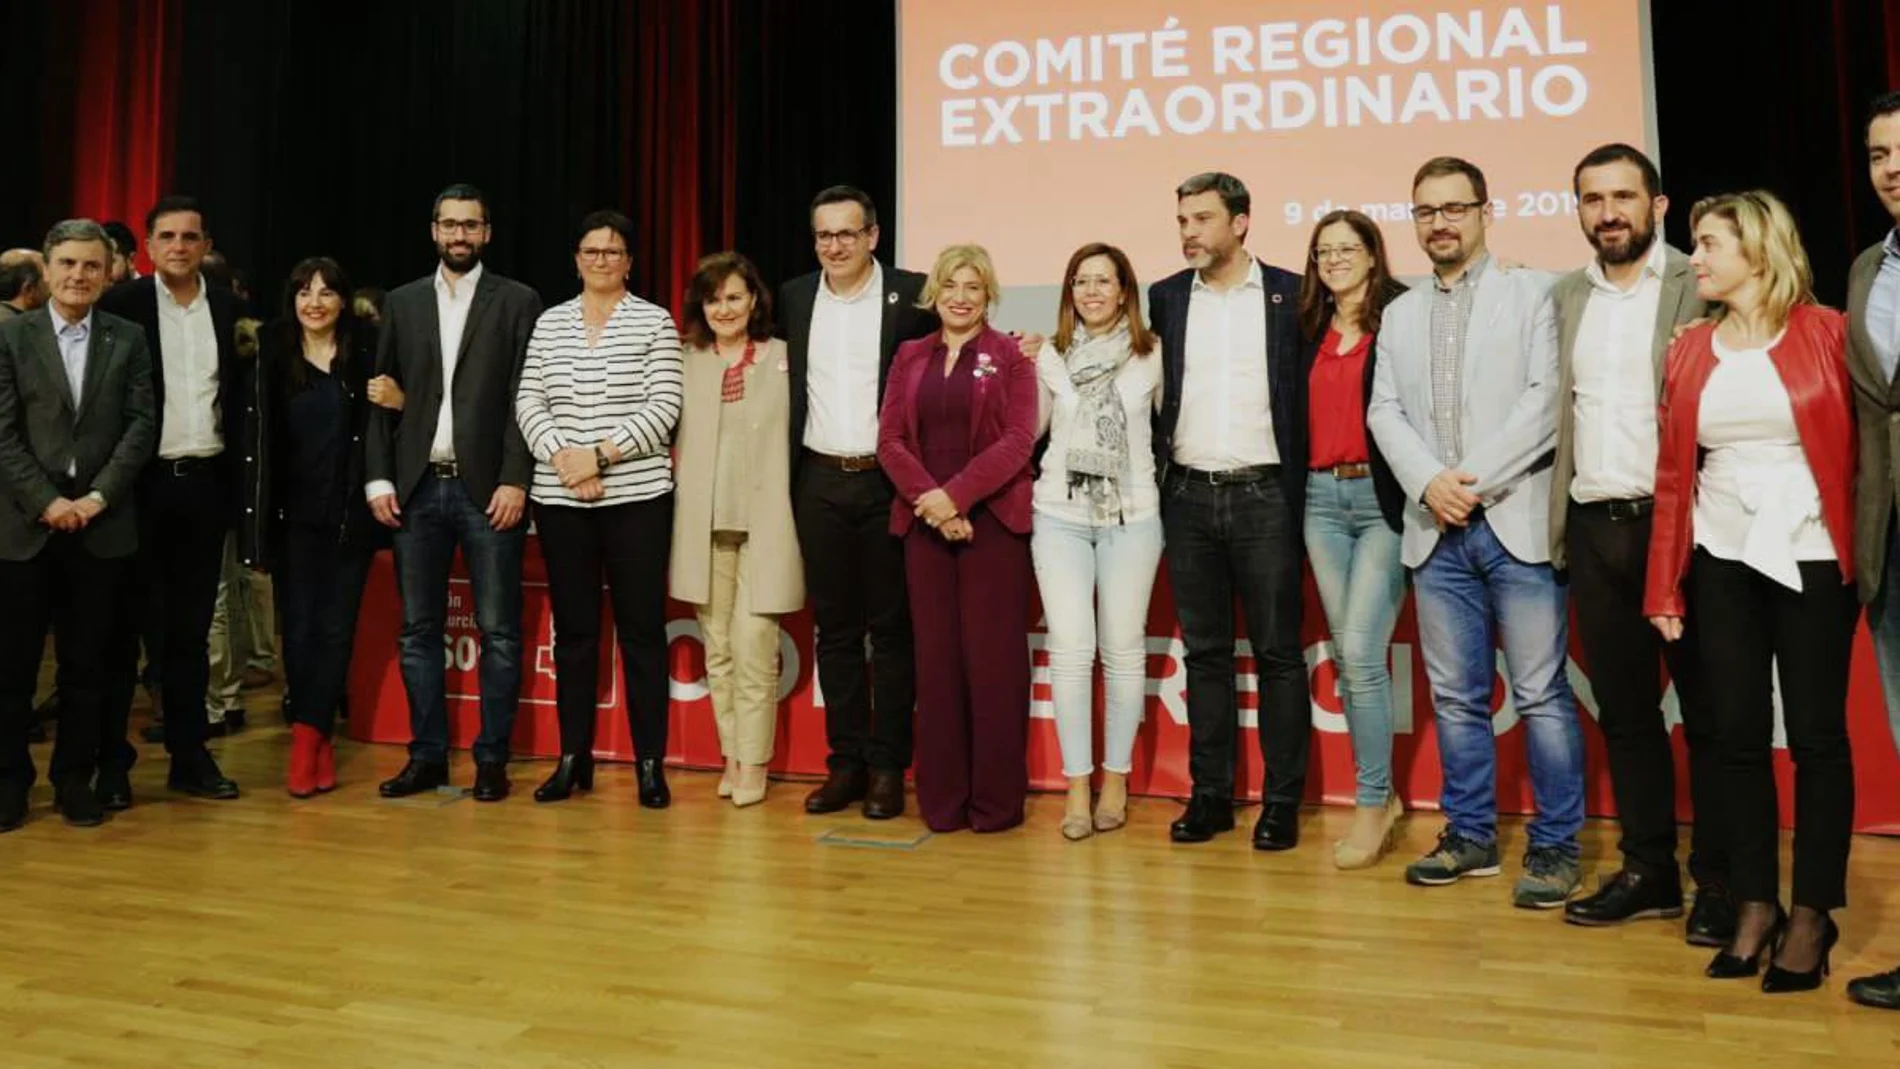 La ministra Carmen Calvo junto a los candidatos socialistas. LA RAZÓN